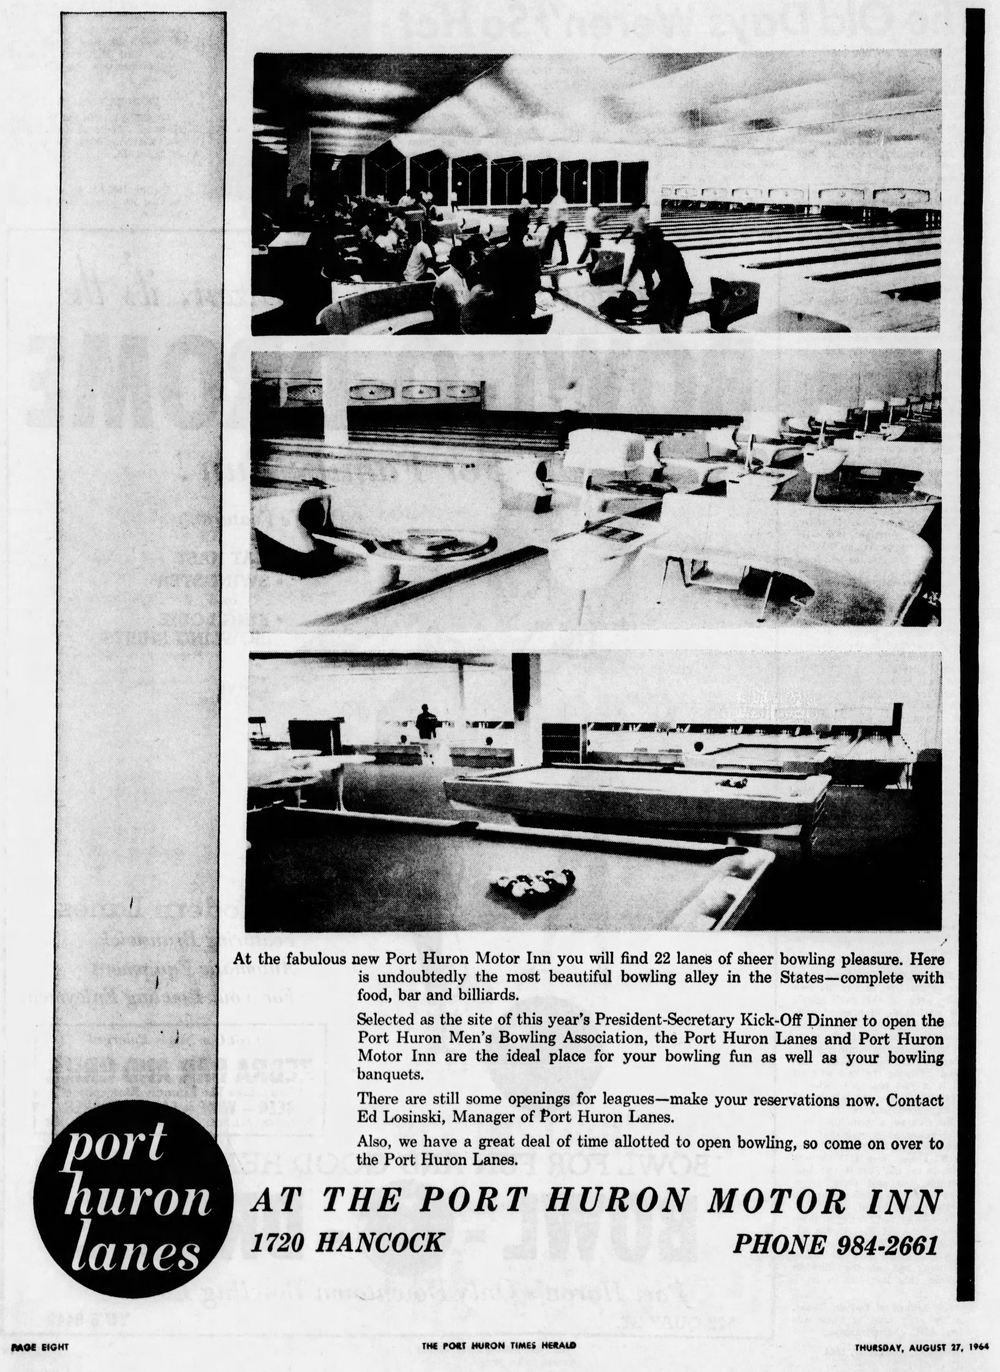 Port Huron Lanes - Aug 27 1964 Ad For Port Huron Motor Inn Next Door